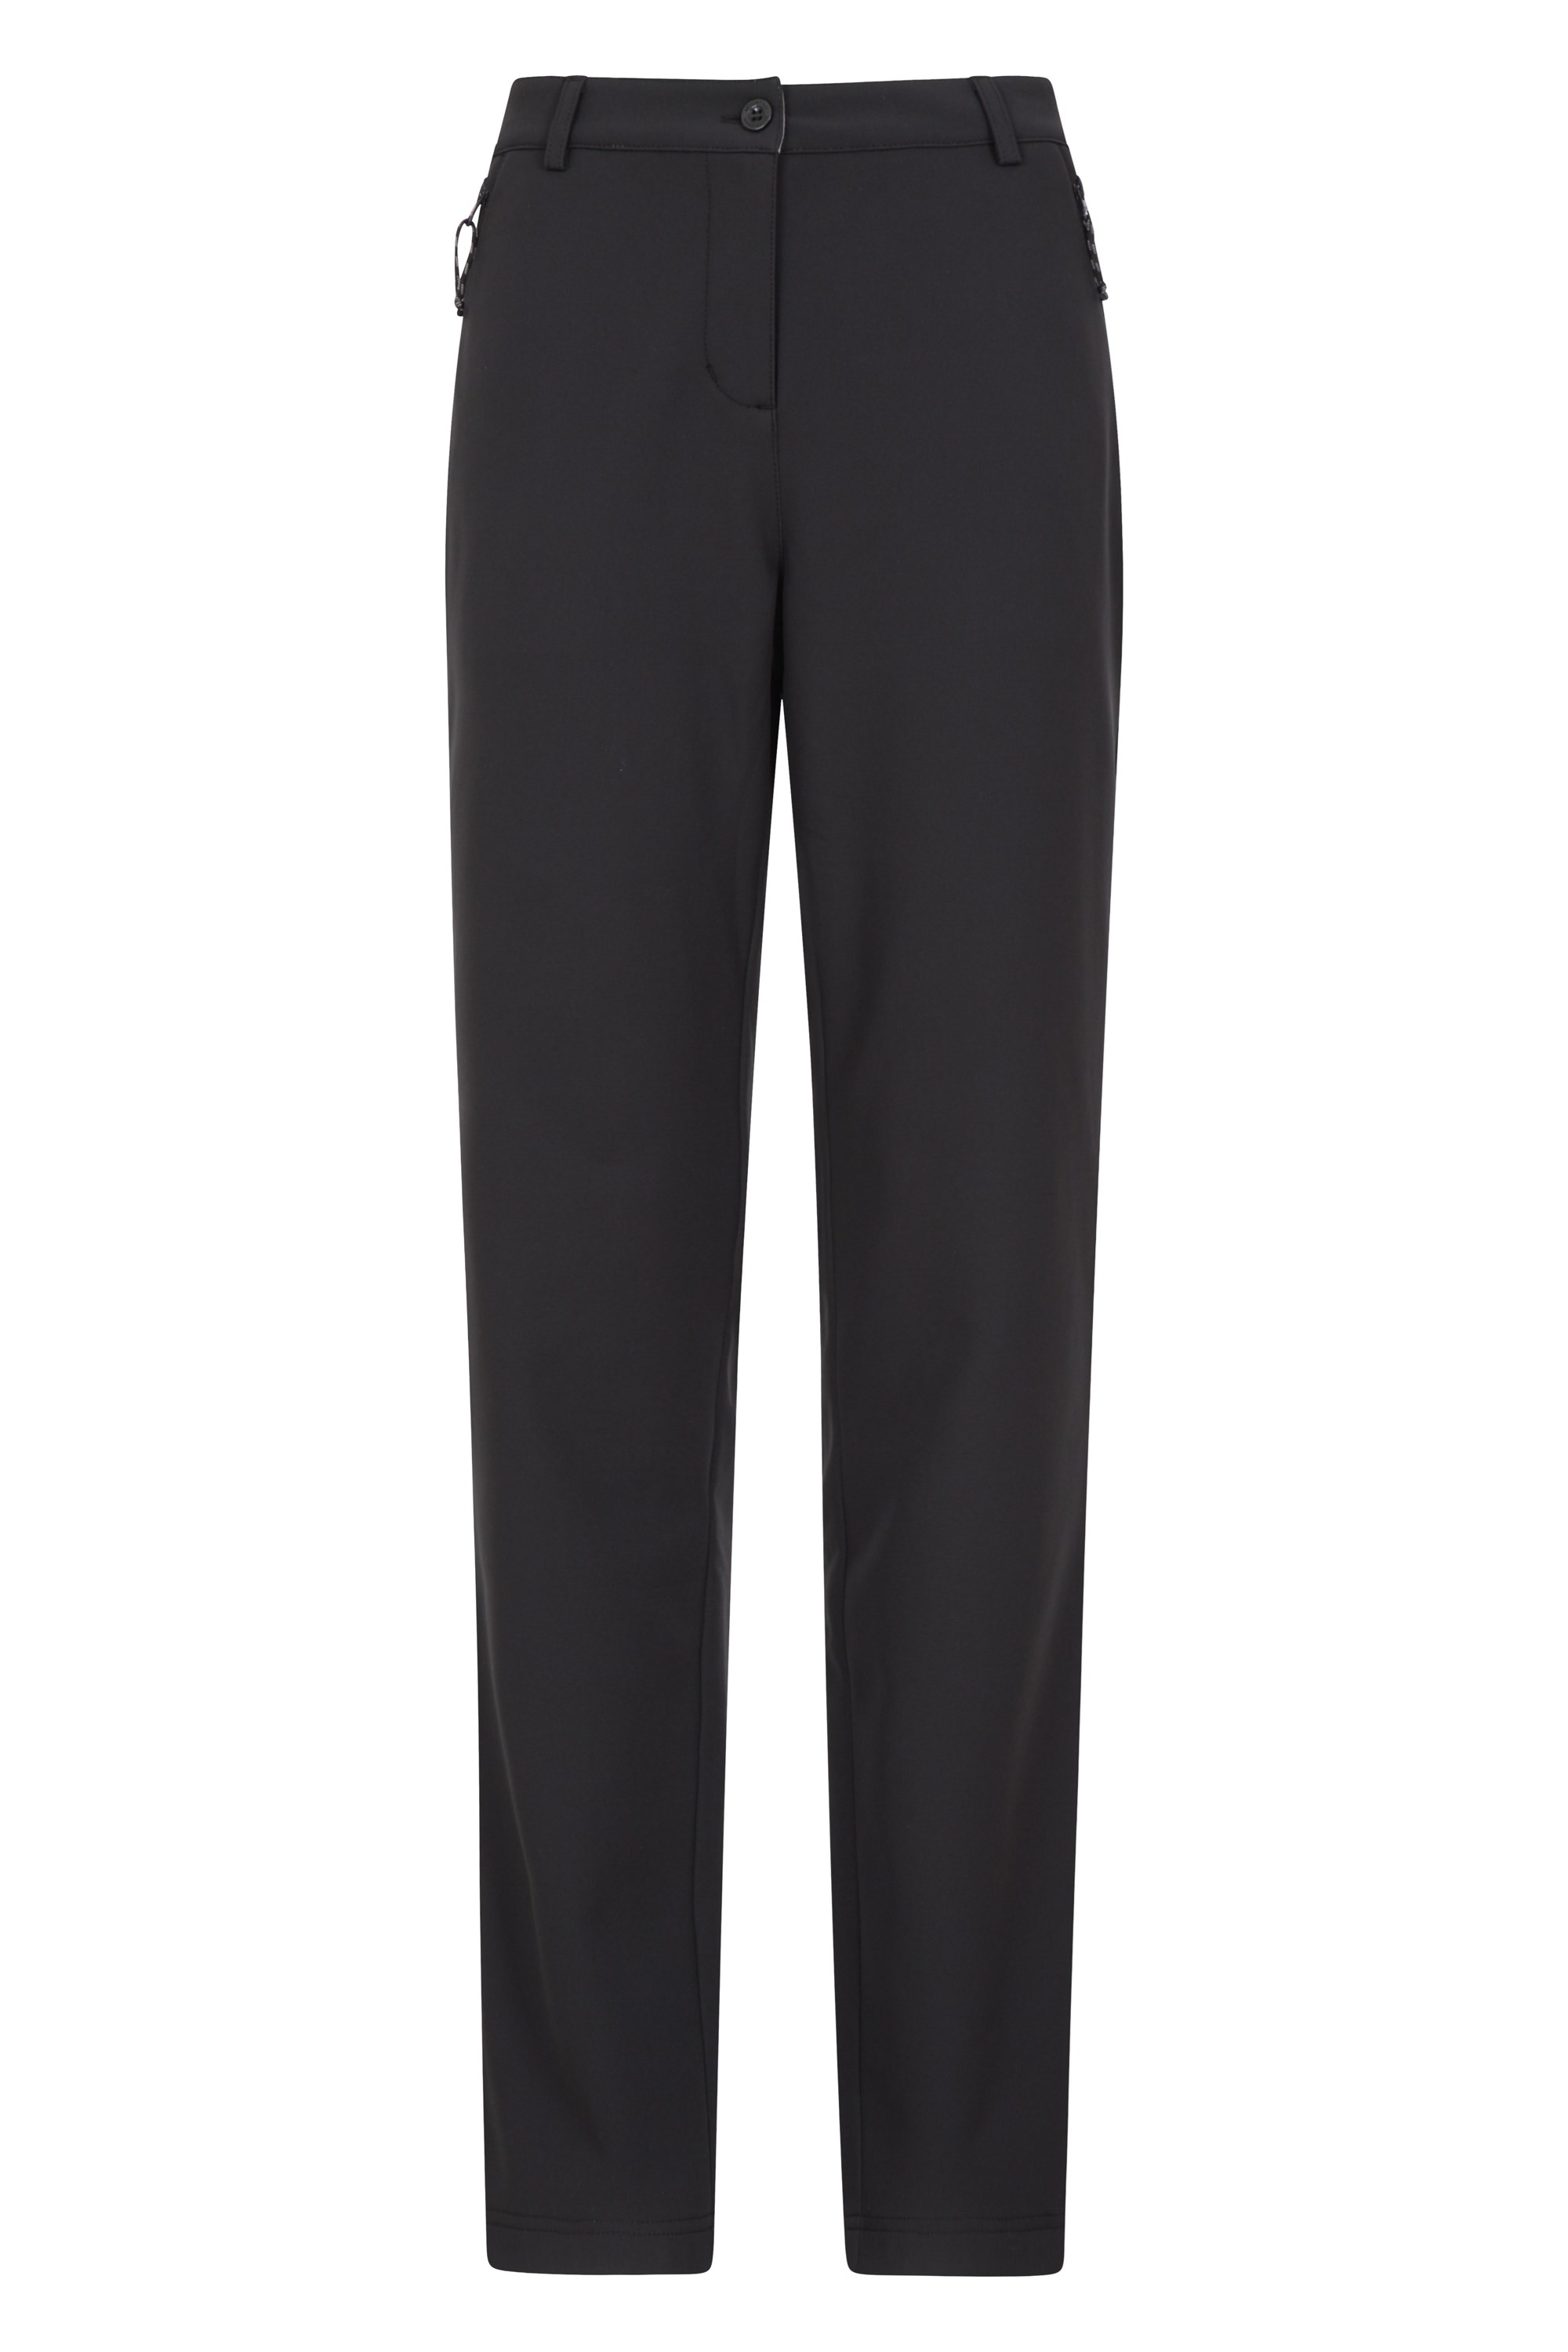 Vermont — damskie miękkie spodnie — krótkie - Black